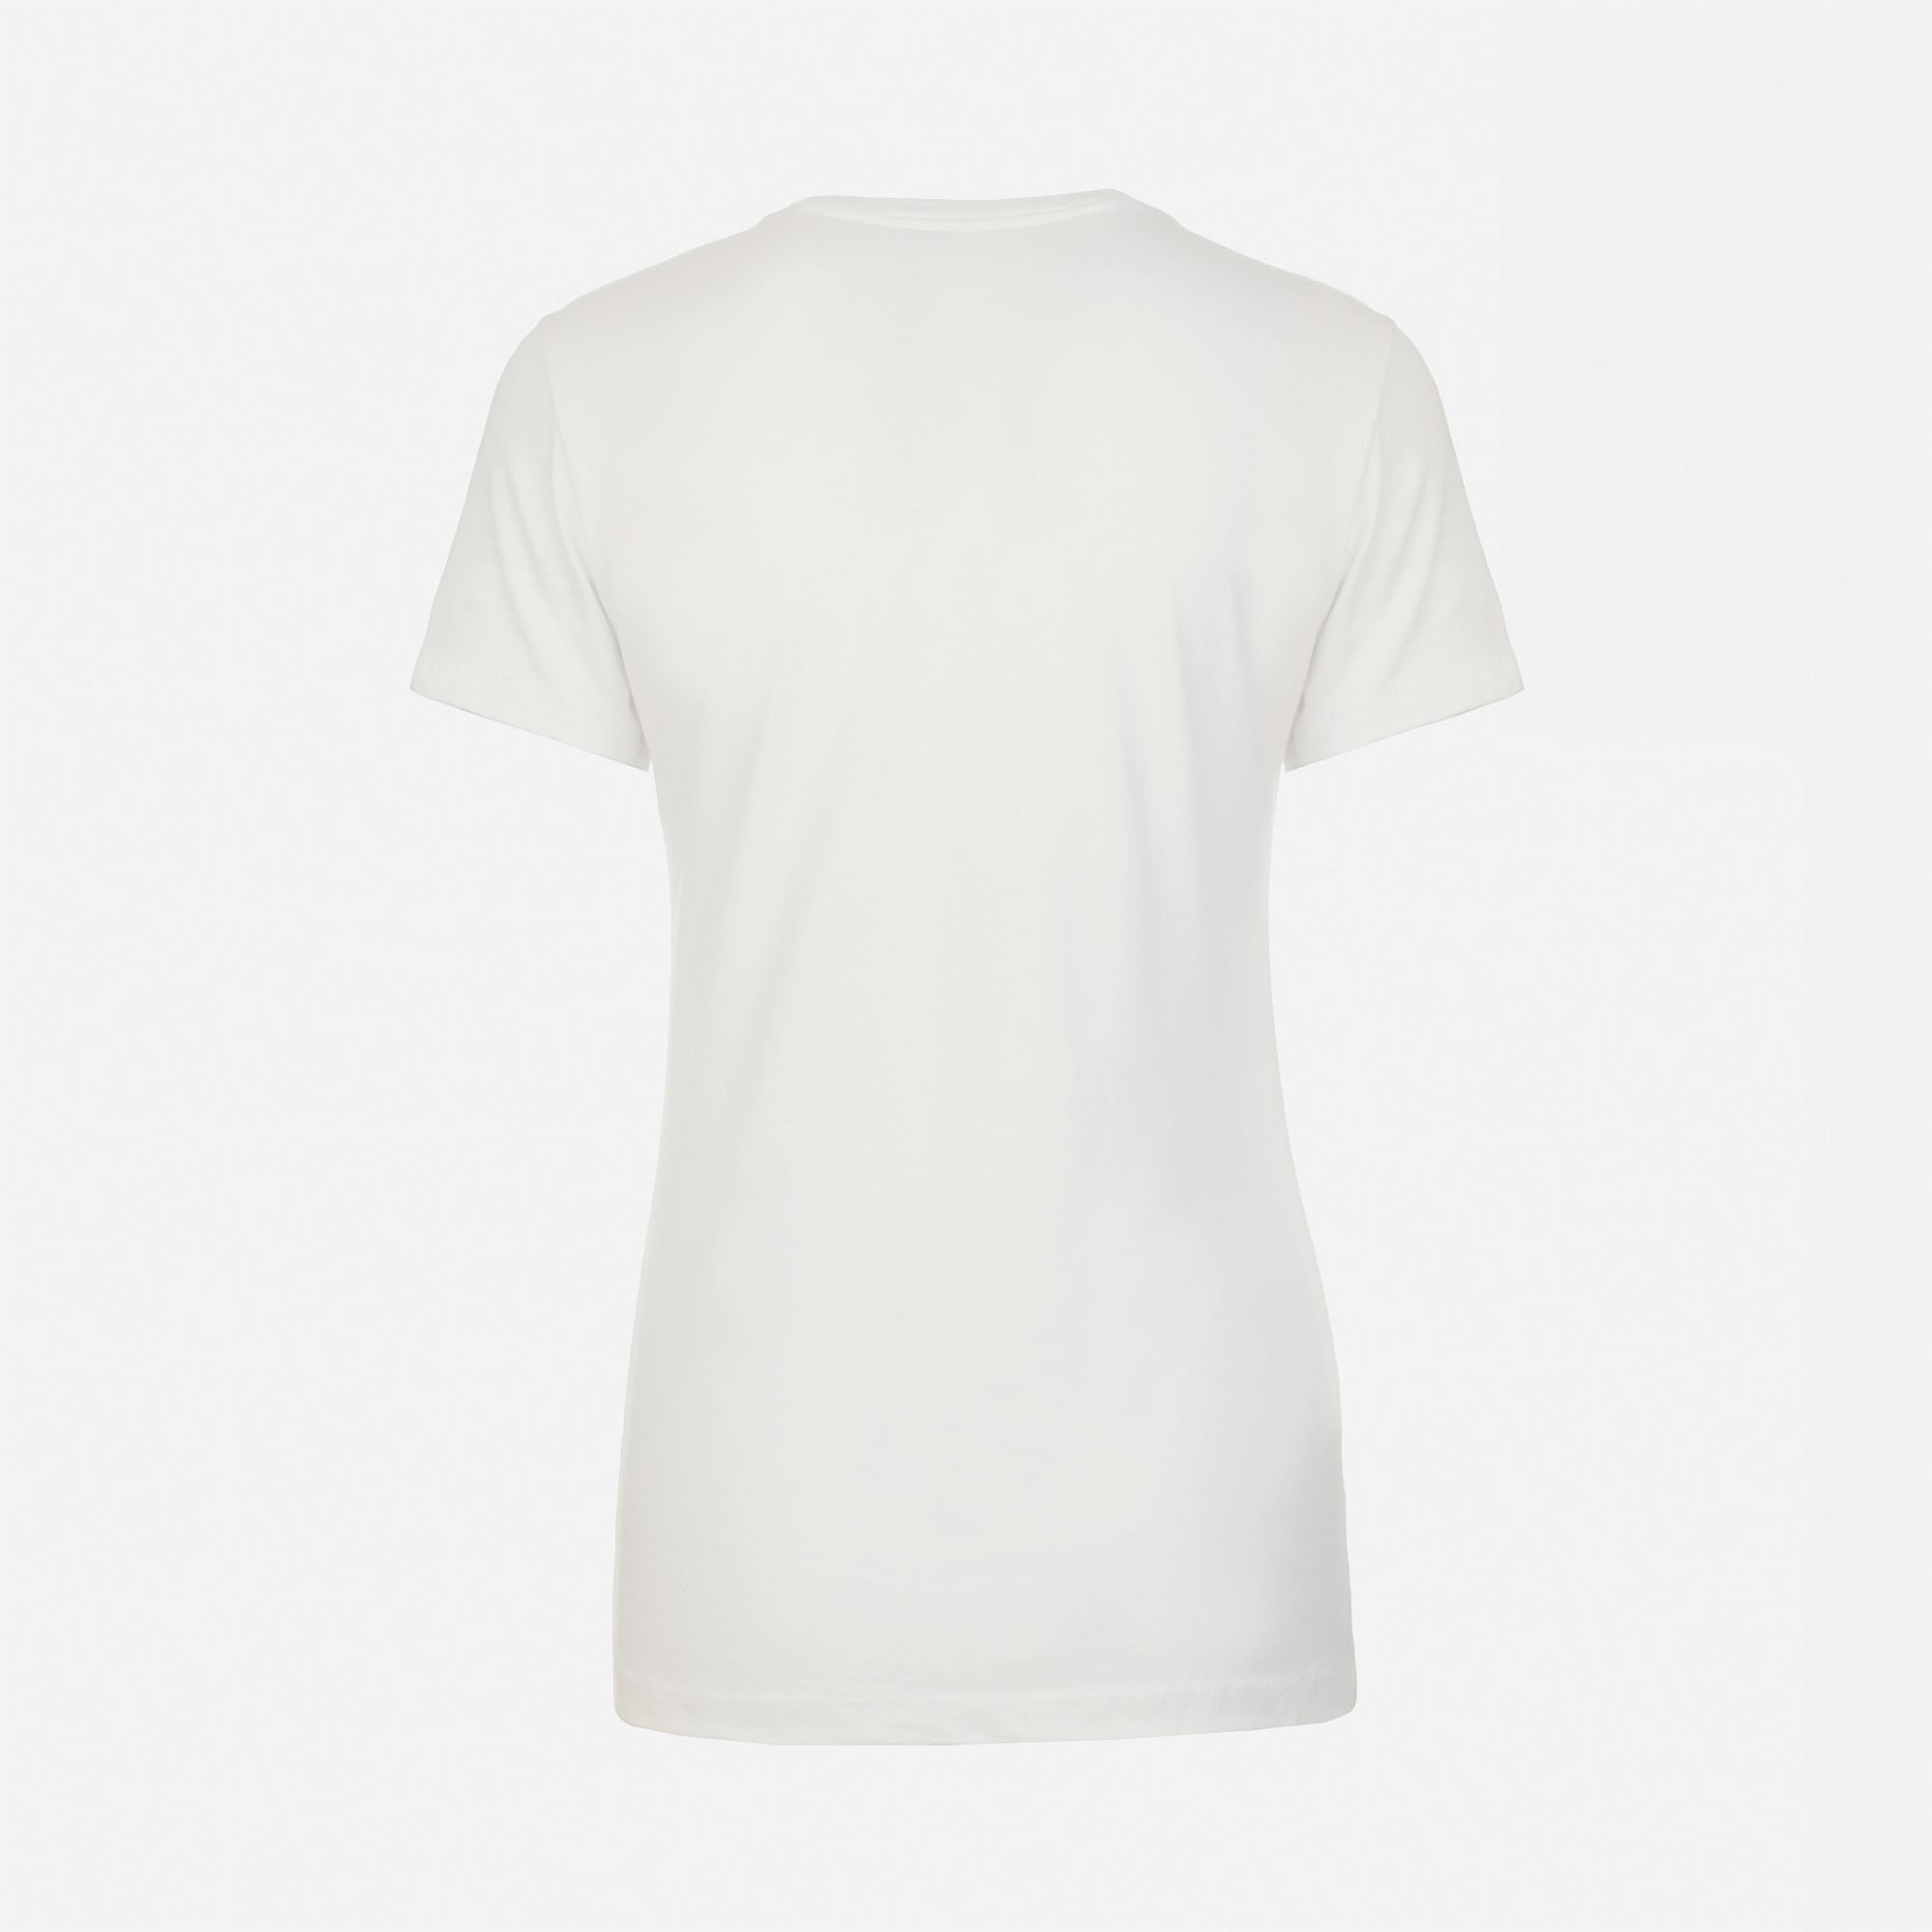 Cotton Boyfriend T-Shirt White 3900 Next Level Apparel Women's Size Back View